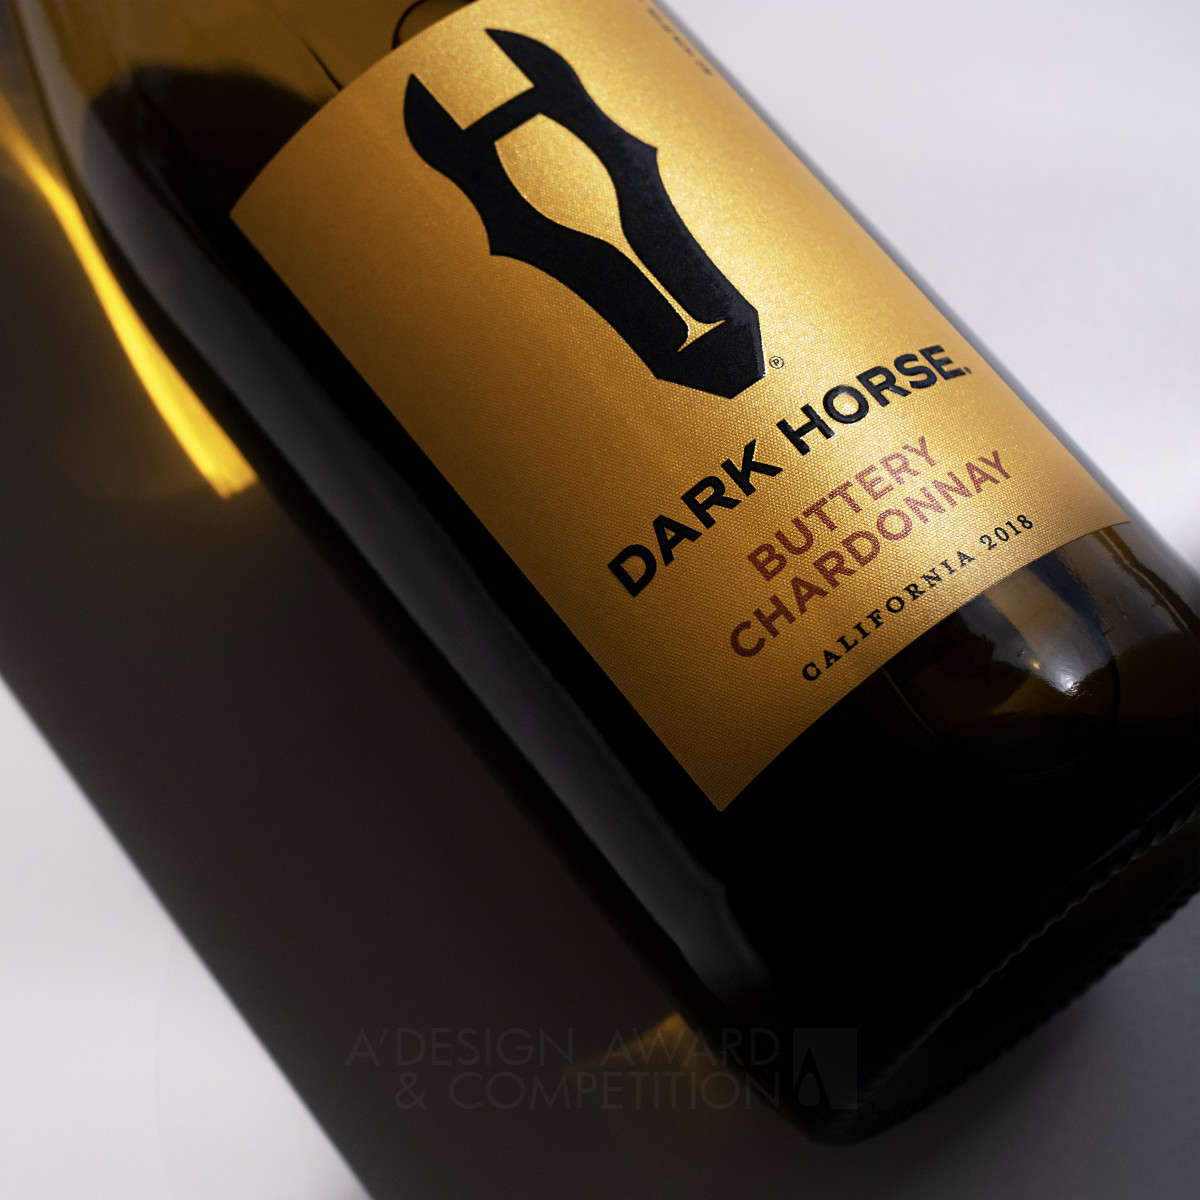 Dark Horse Wine Branding and Redesign by Laurent Hainaut